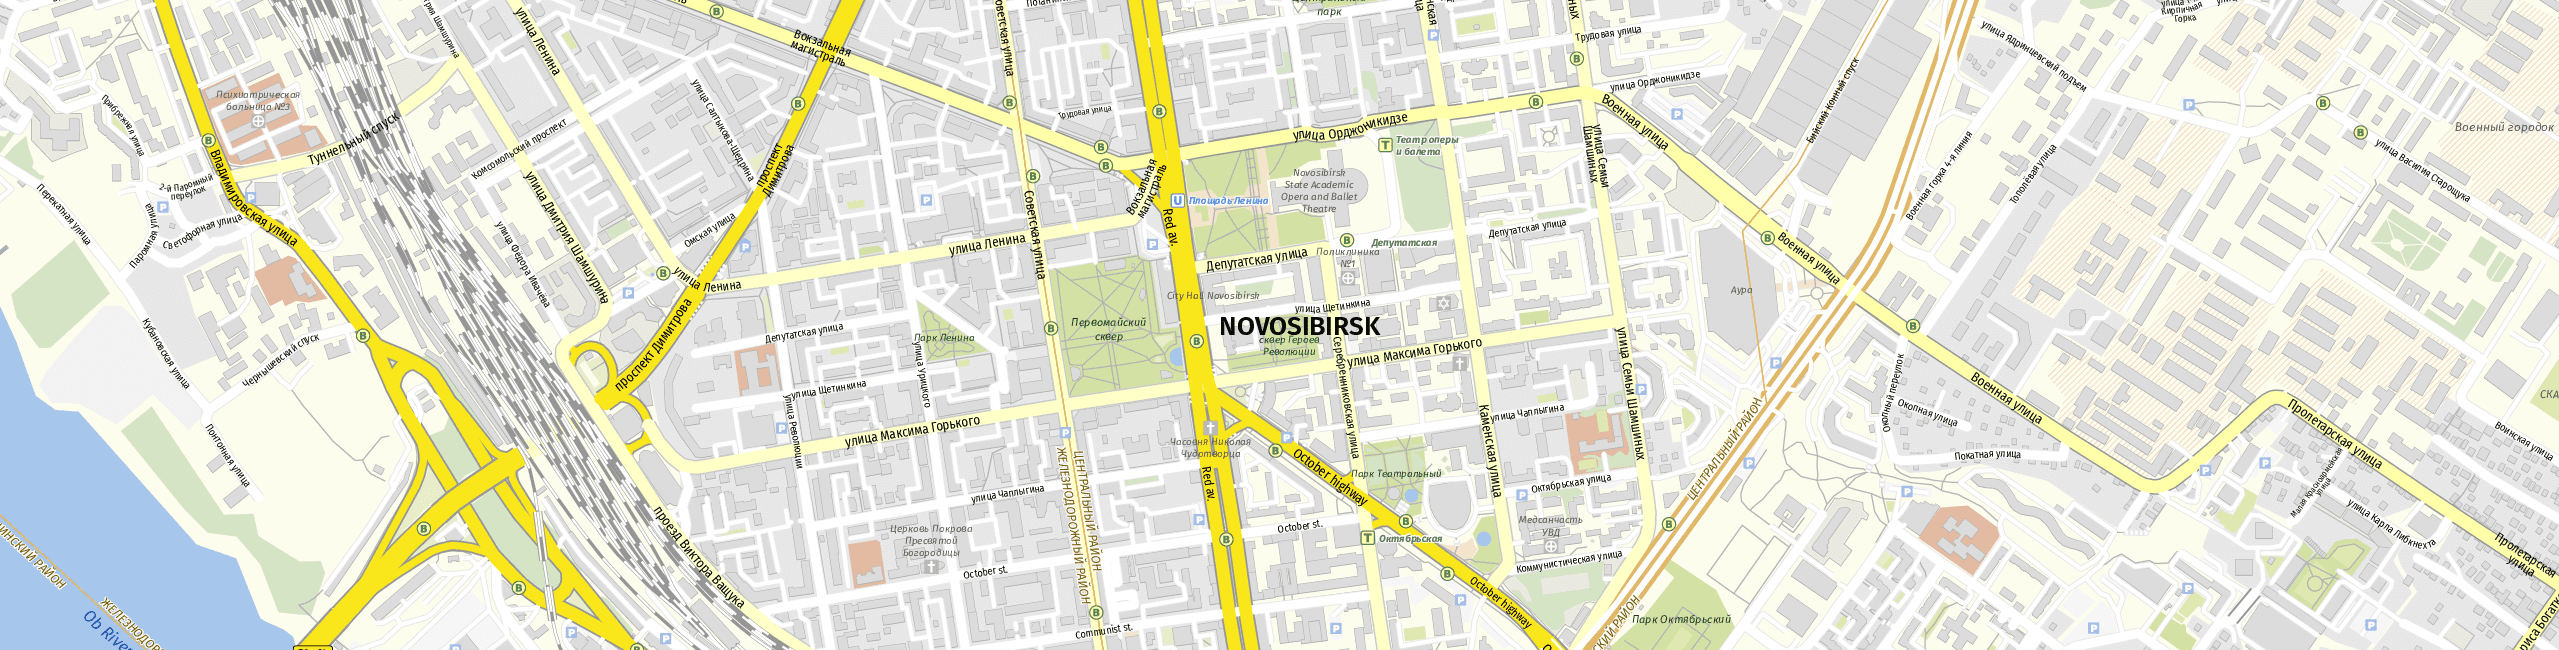 Stadtplan Novosibirsk zum Downloaden.